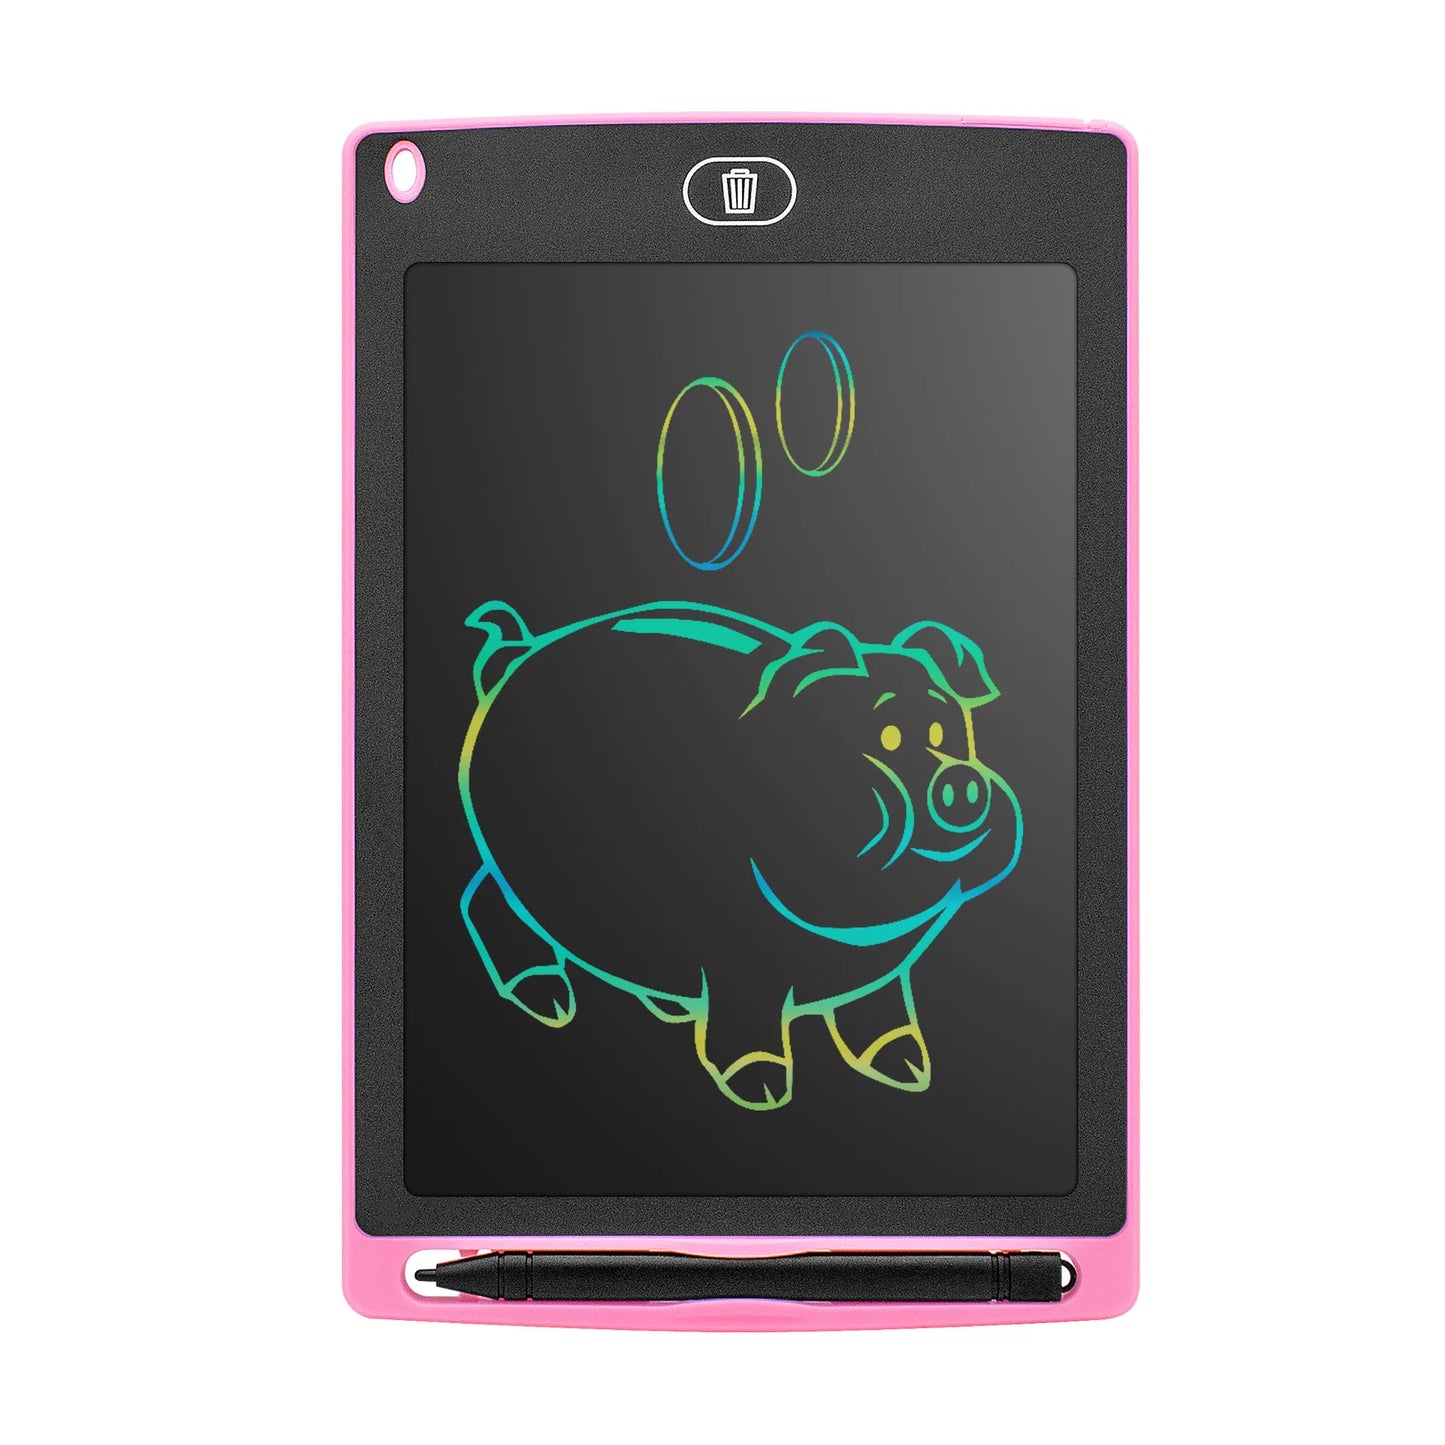 6.5/8.5/inch LCD Tekentablet voor Kinderen - Tekenbord - Educatief LCD Tablet - Speelgoed voor Kinderen - Tekenen & Knutselen - Digitaal Tekenen / Digitale Tekening - - DilaTrendshop